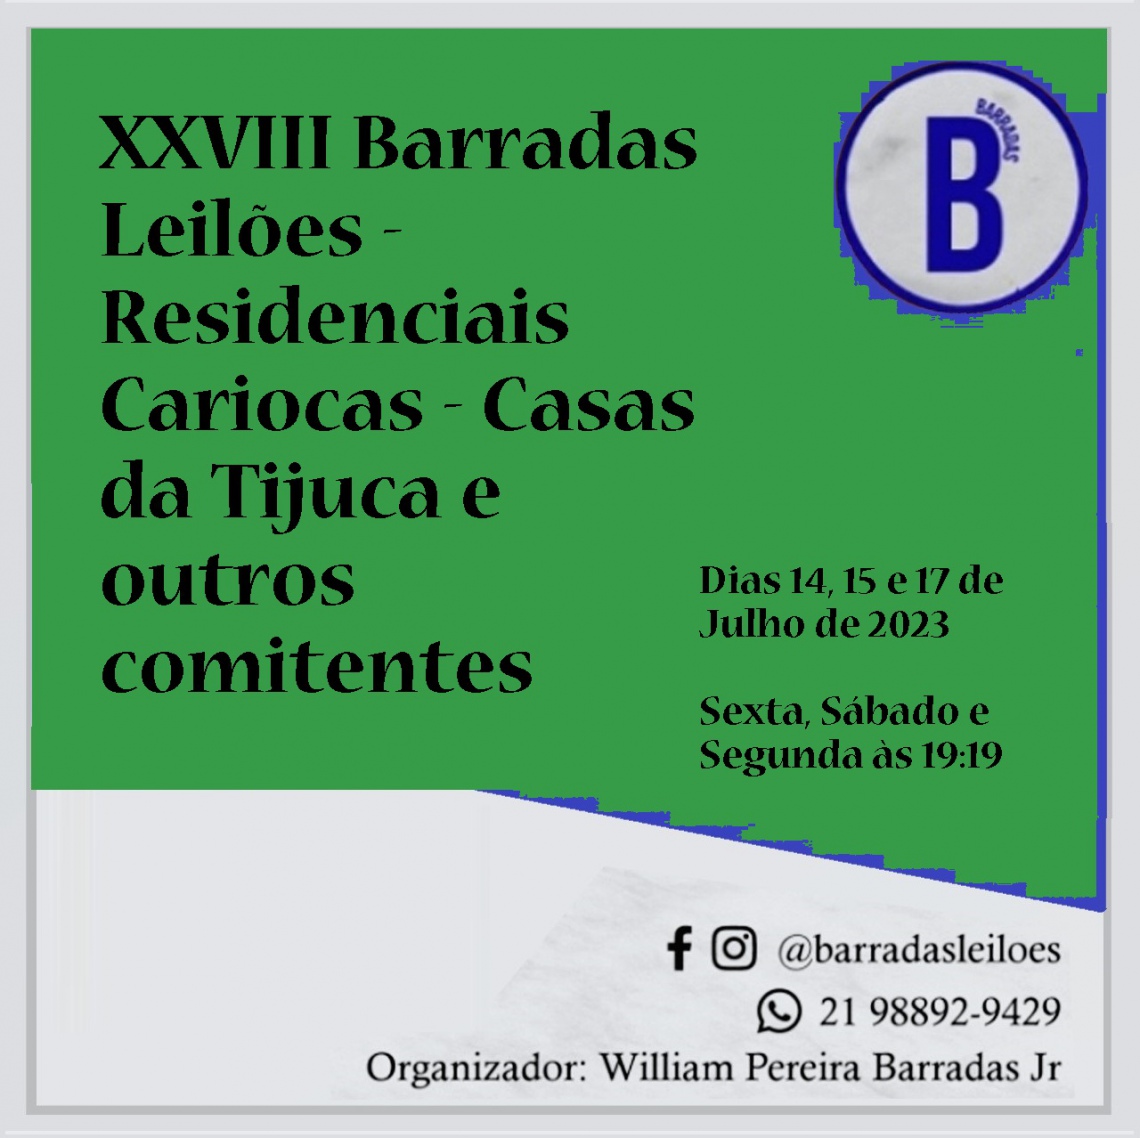 XXVIII Barradas Leilões - Residenciais Cariocas - Casas da Tijuca e outros comitentes